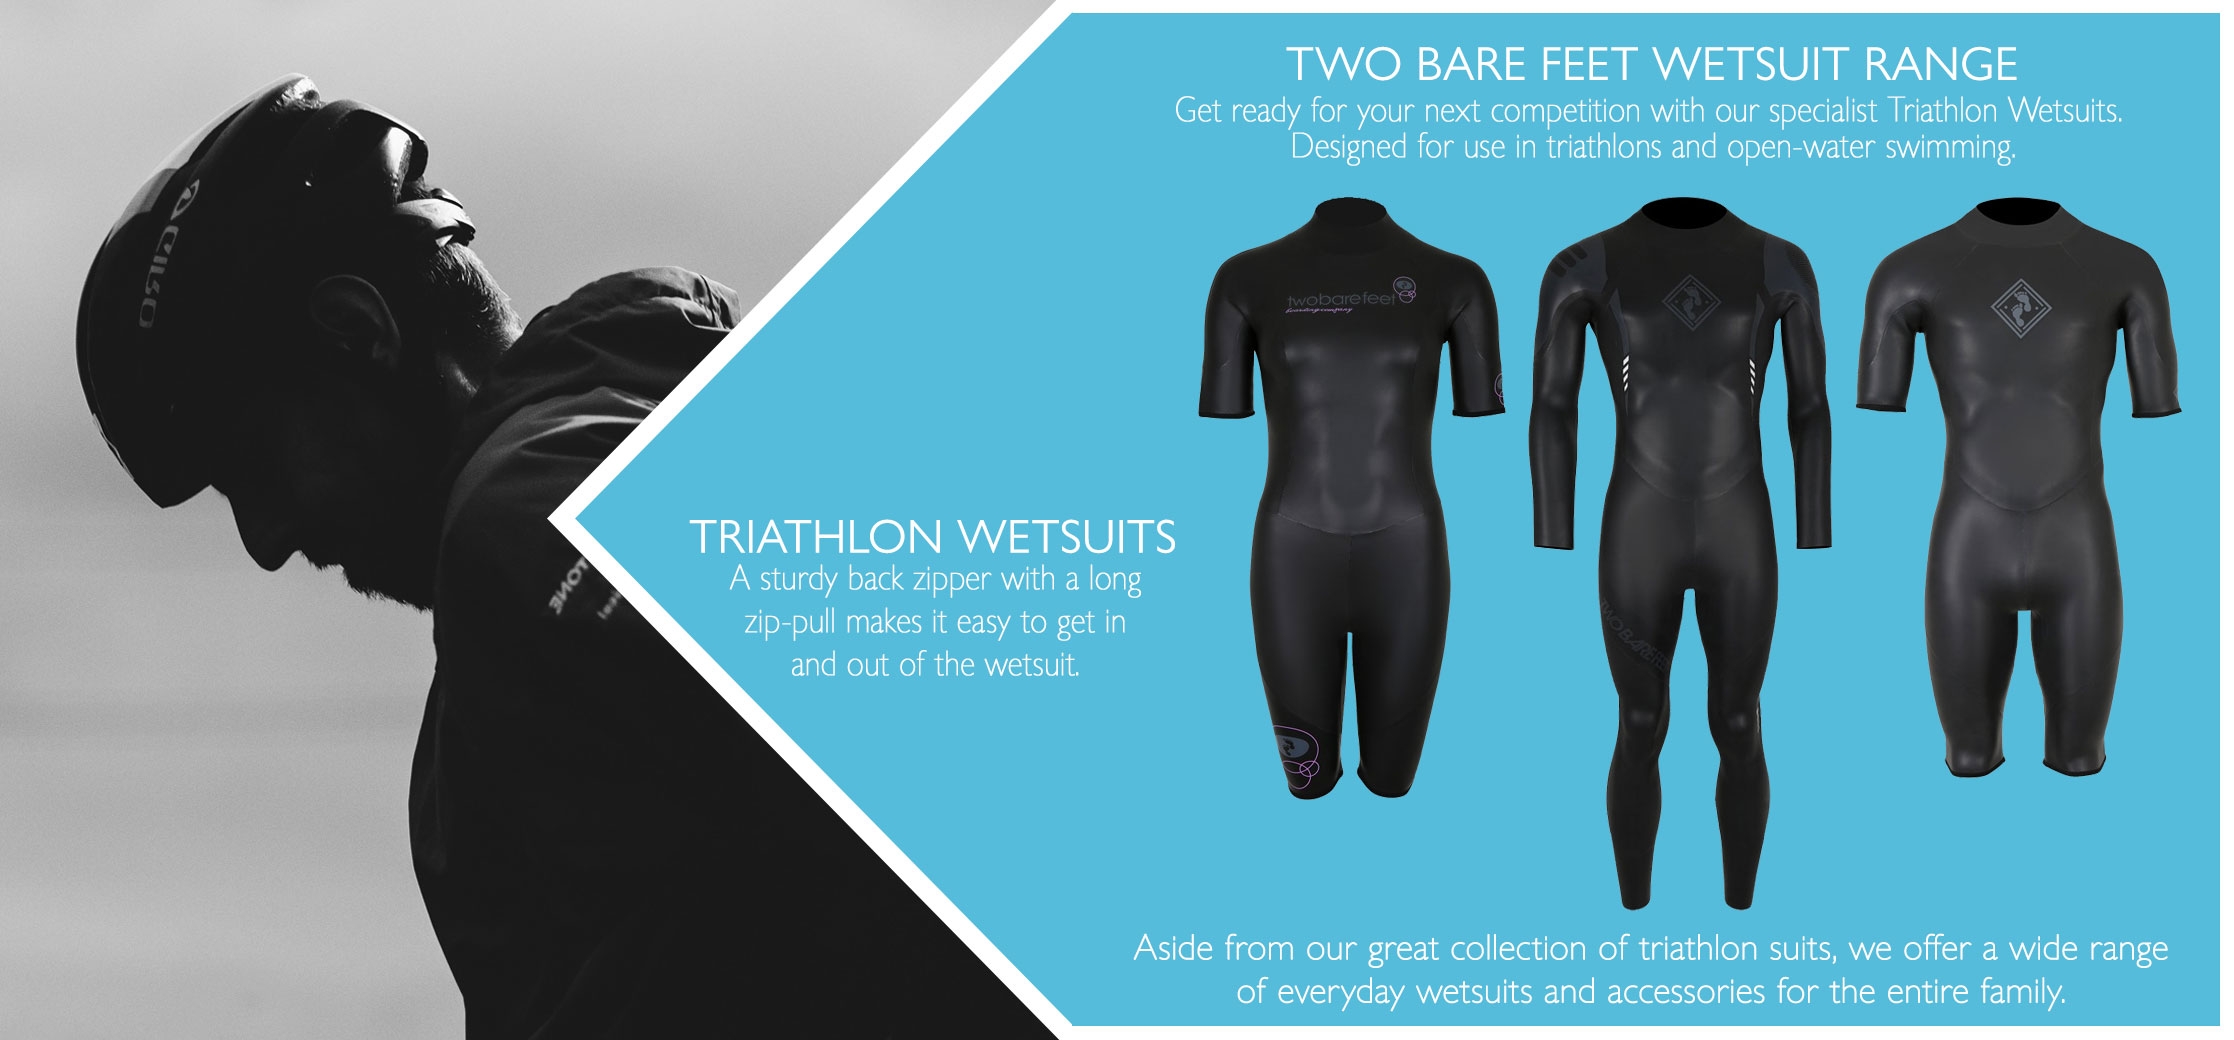 Triathlon wetsuits information